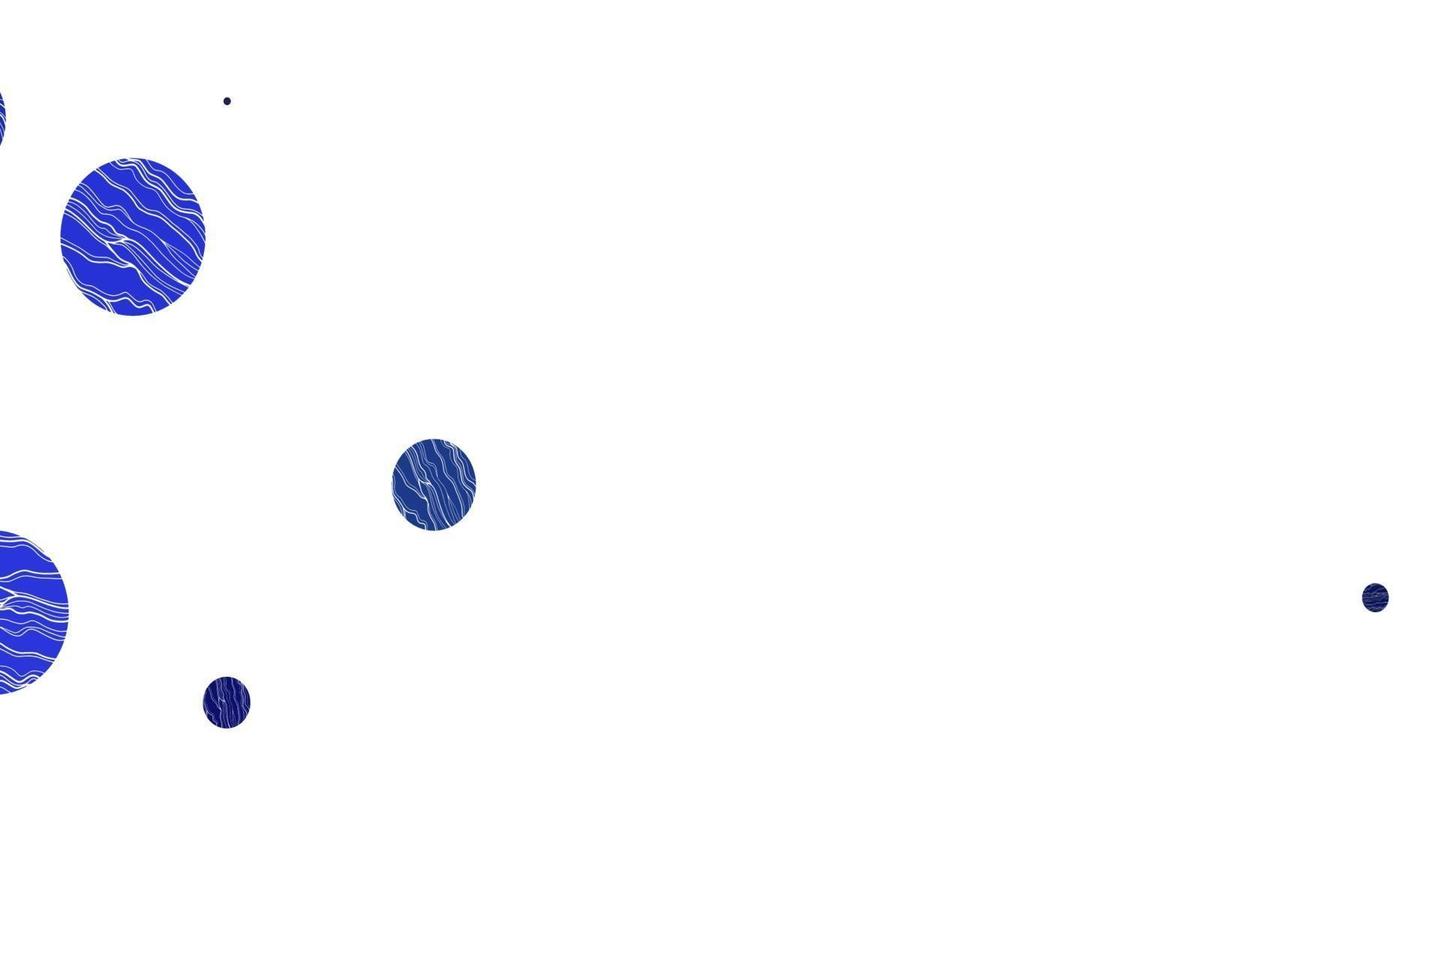 padrão de vetor azul claro com esferas.